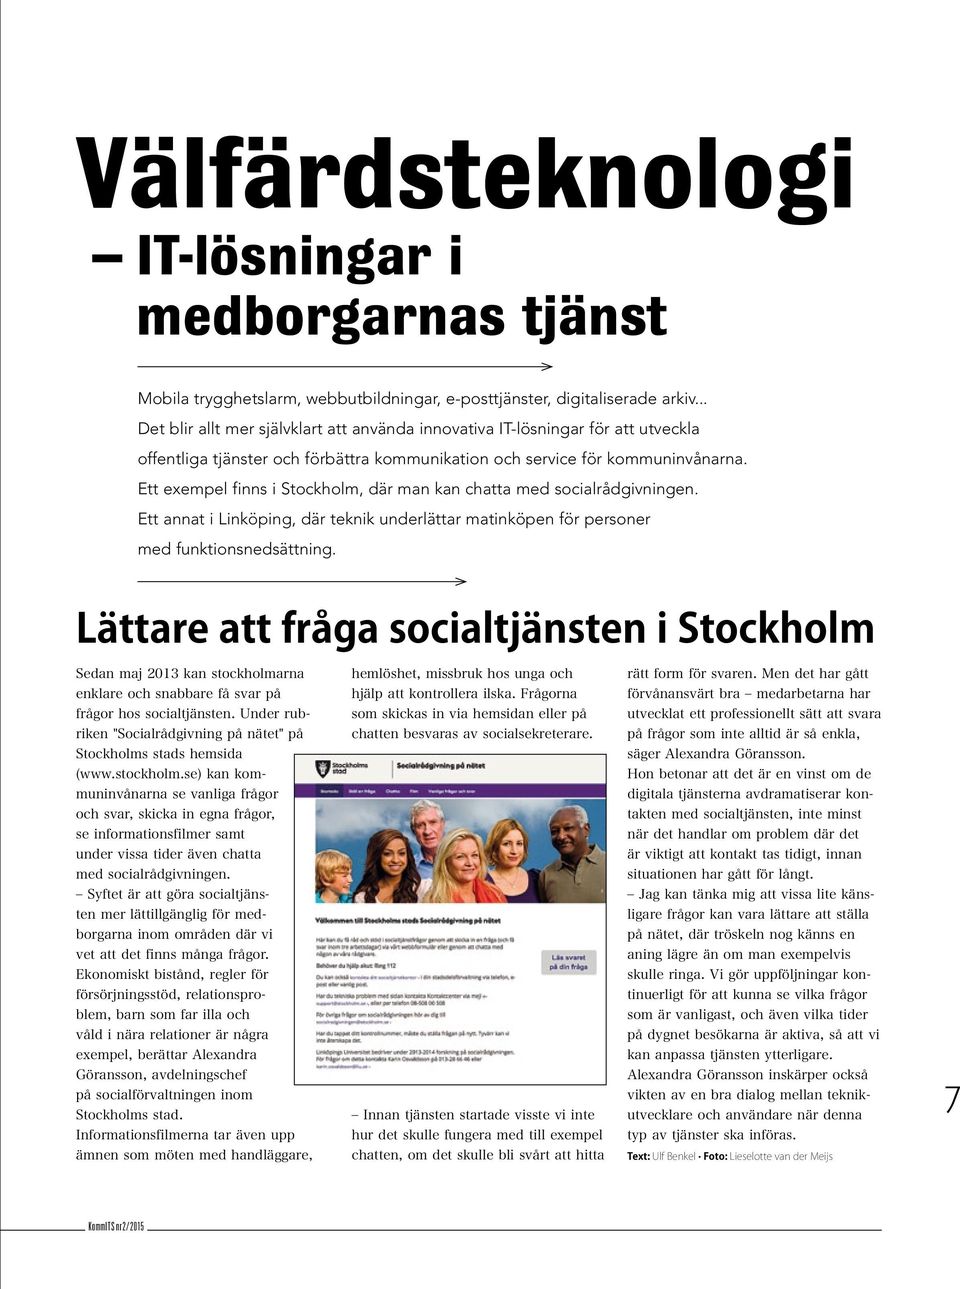 Ett exempel finns i Stockholm, där man kan chatta med socialrådgivningen. Ett annat i Linköping, där teknik underlättar matinköpen för personer med funktionsnedsättning.